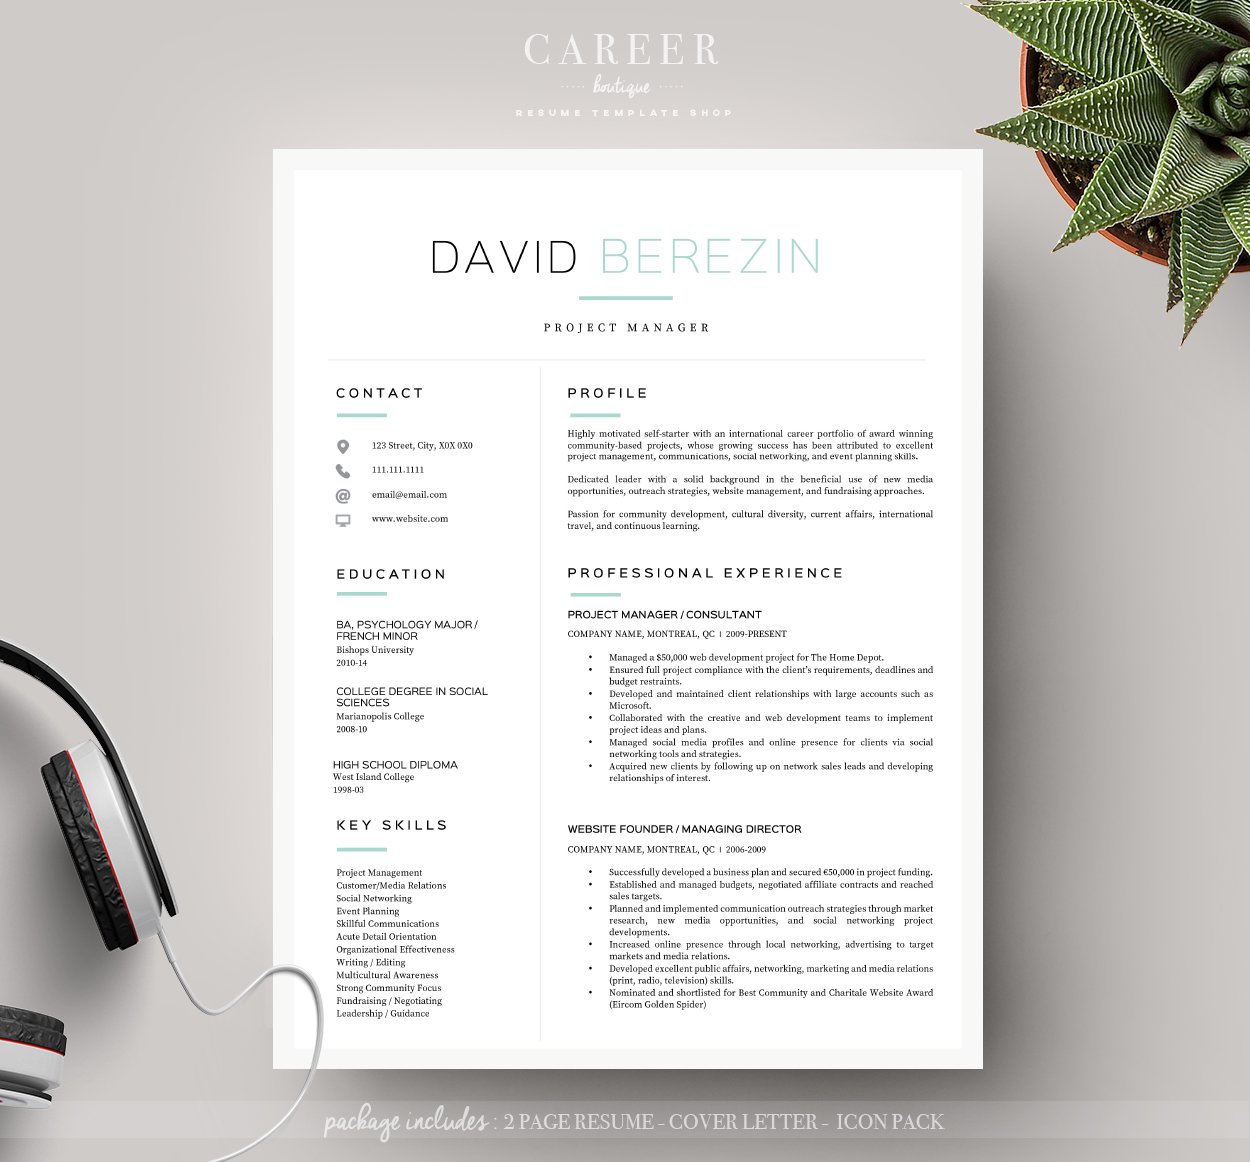 Modern resume & CoverLetter Template cover image.